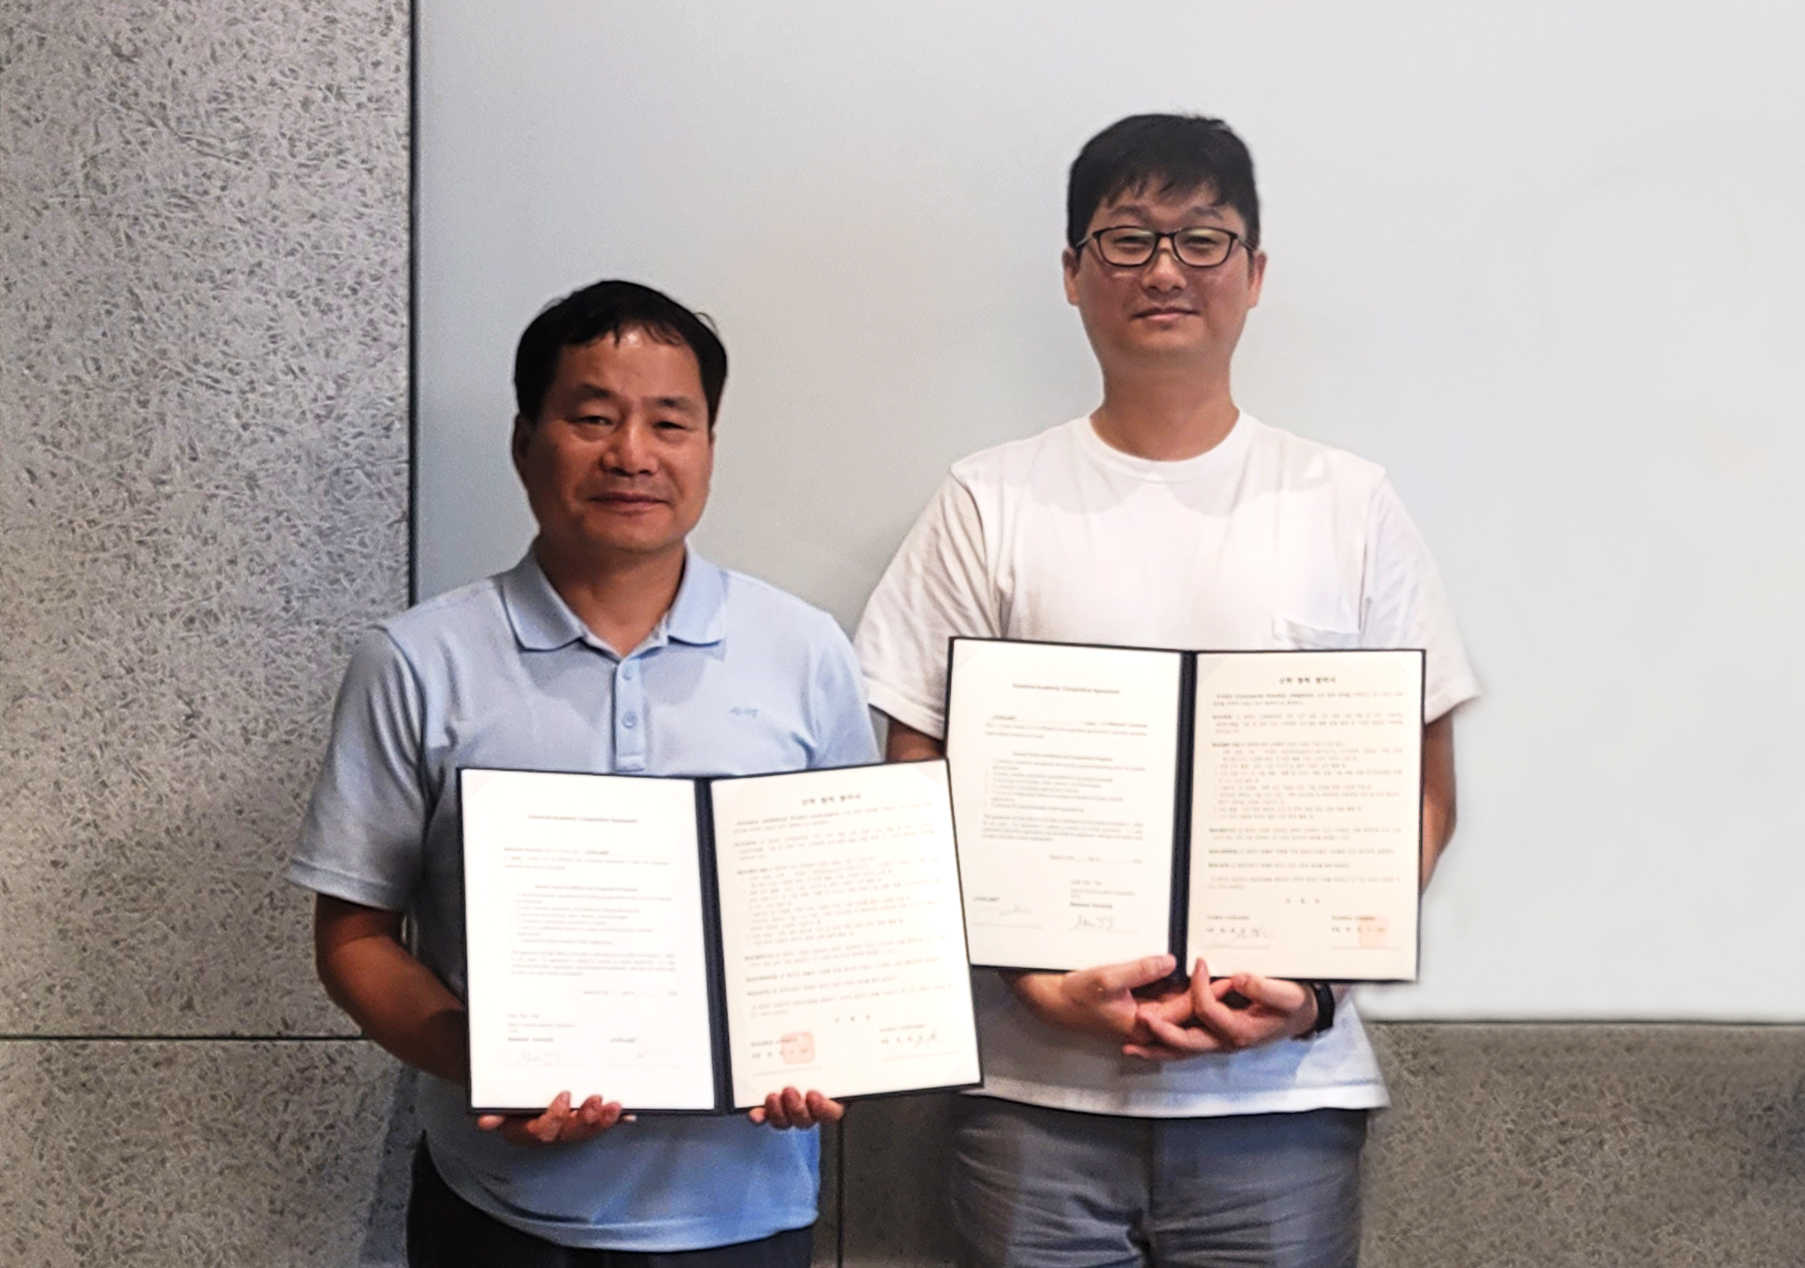 백석대는 6일 일본 ㈜유토플래닛과 일본 게임분야 해외취업과 인재양성을 위한 산학협력 협약을 체결했다. 백석대 제공